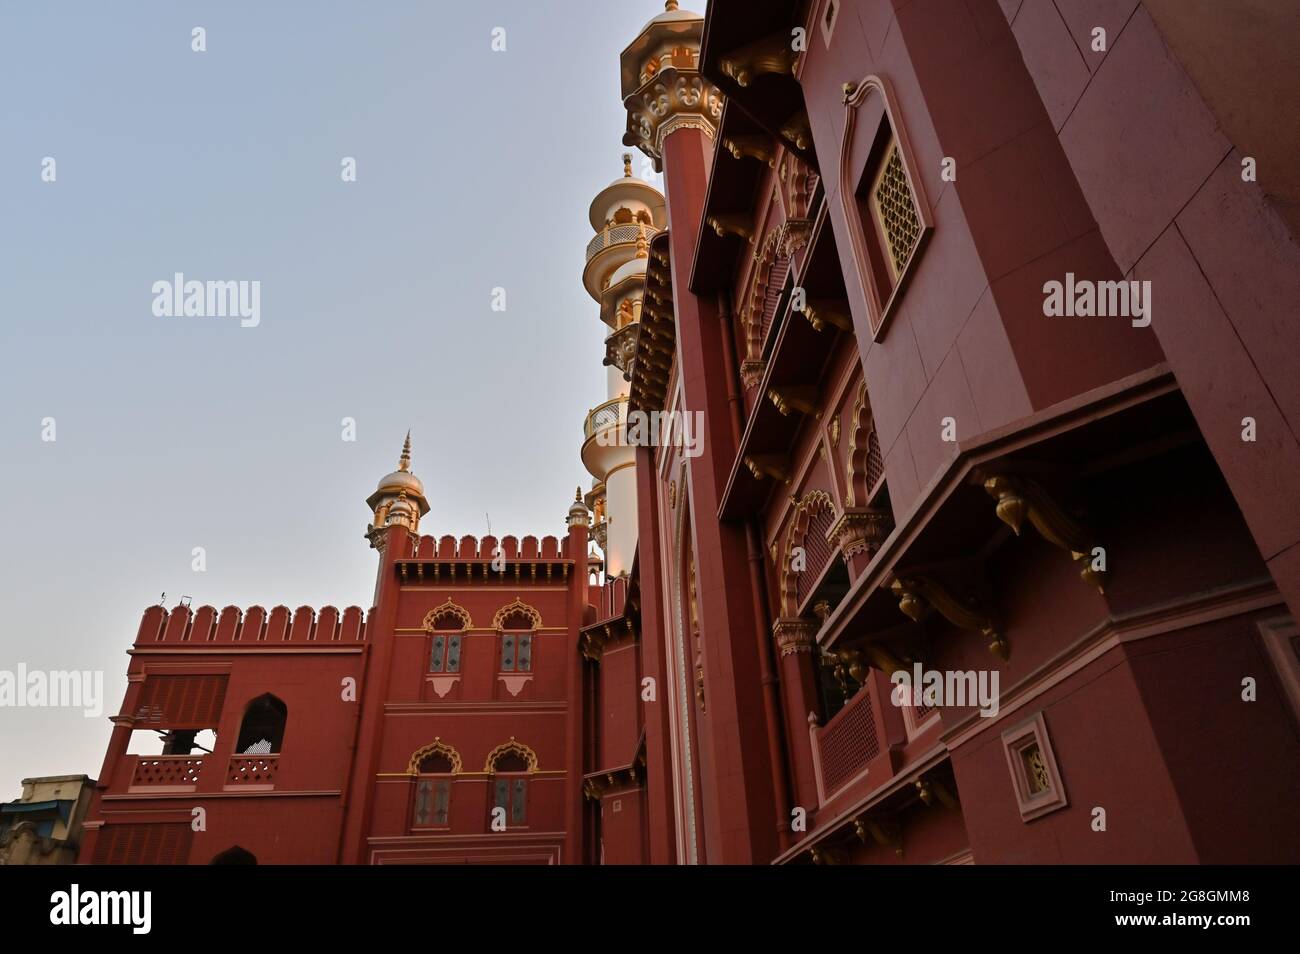 Bella architettura rossa coulured di Nakhoda Mashid nel centro di Kolkata. Questo luogo è famoso per la riunione della comunità musulmana per la celebrazione dell'Eid. Foto Stock